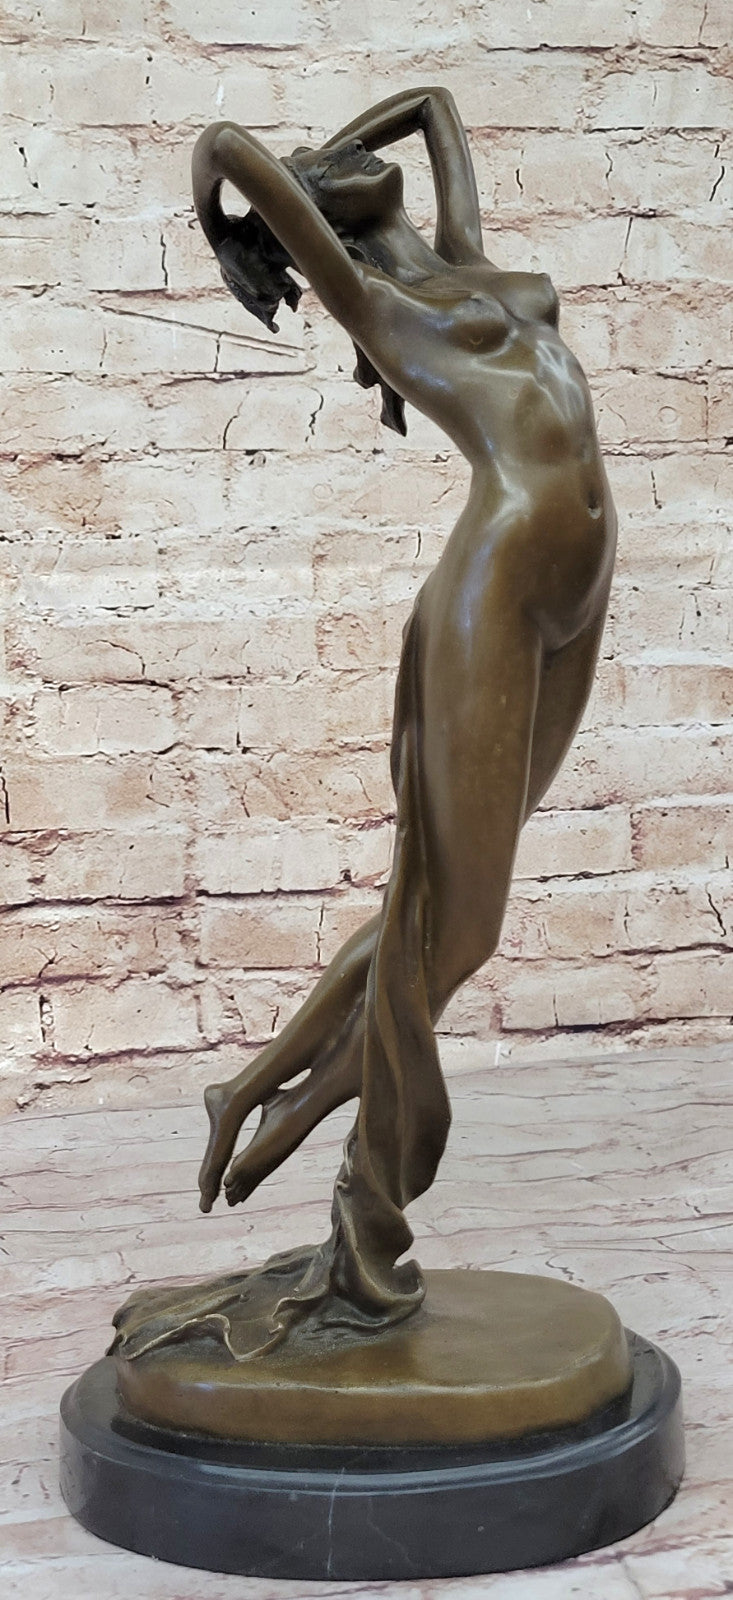 Nude Female Woman Lady Bronze Sculpture Figurine Hot Cast Home Office Decor